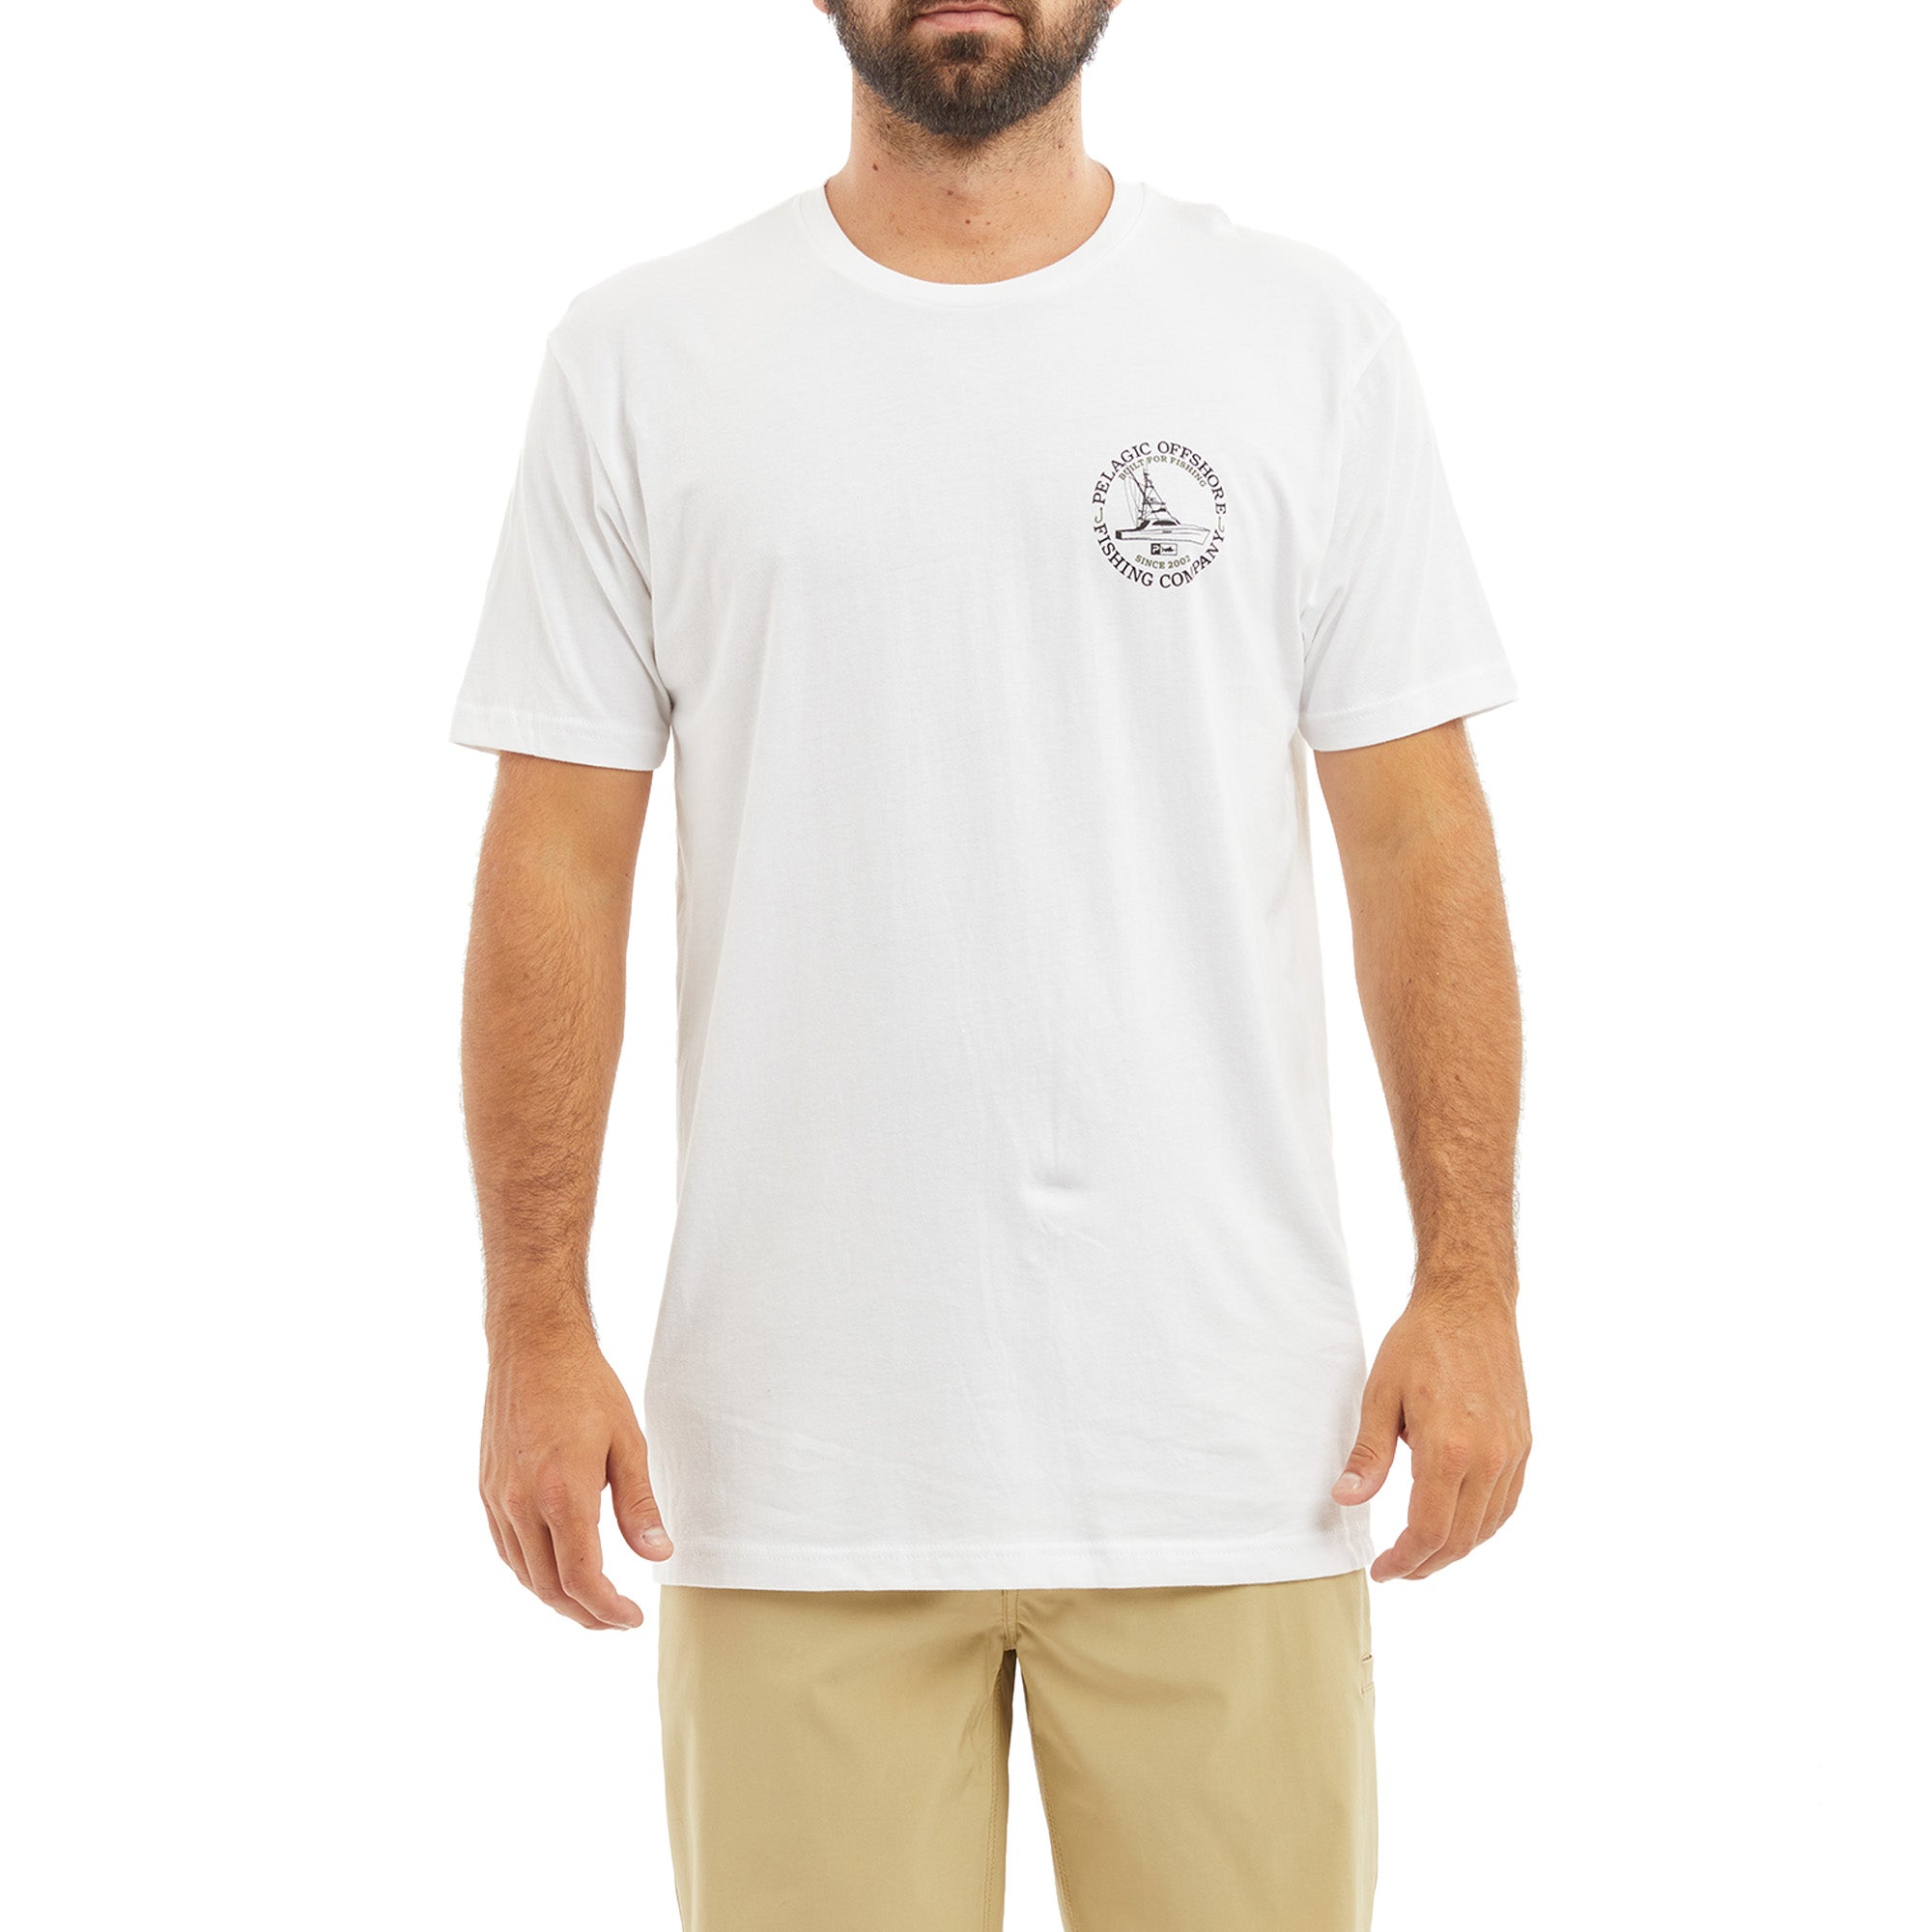 Men's Fishing Charters Shirt